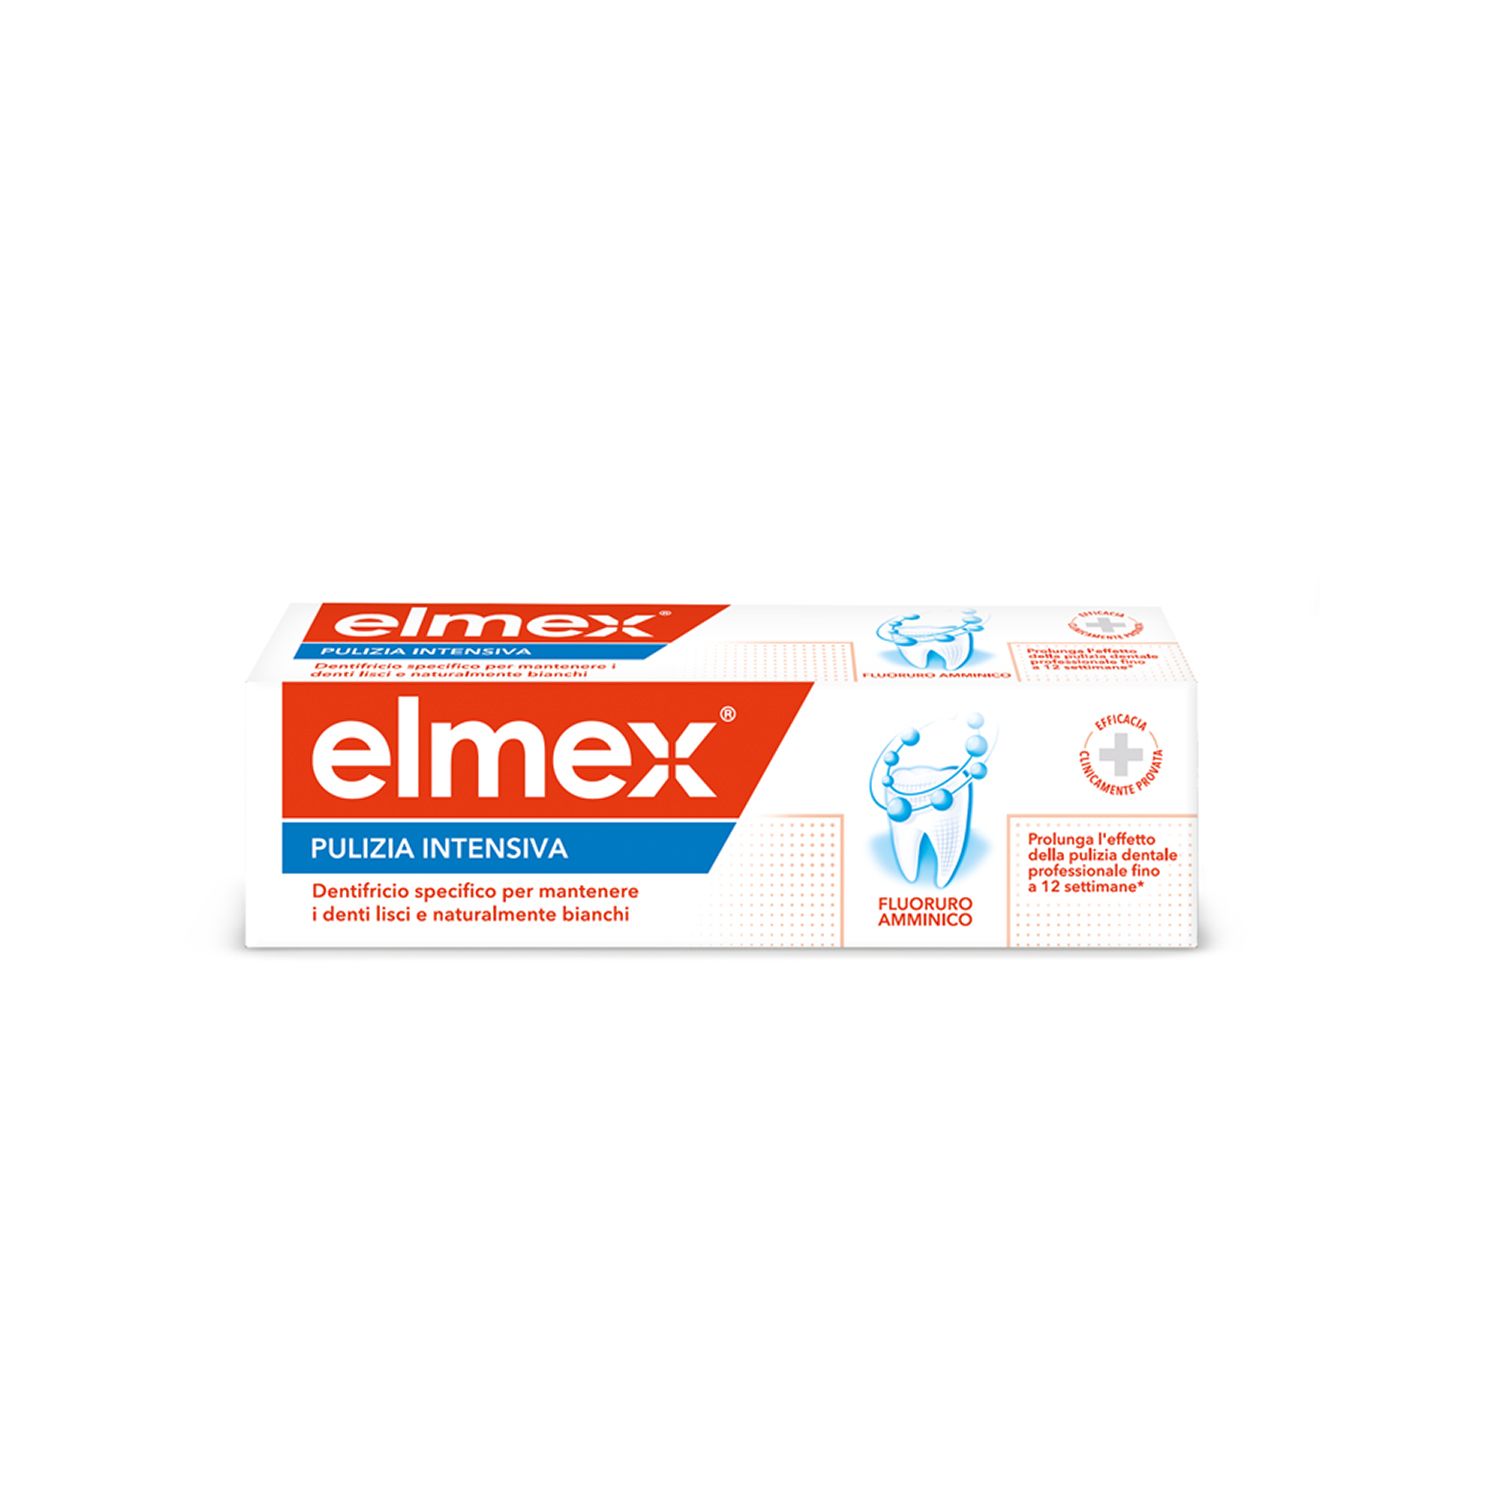 Image of Elmex® Pulizia Intensiva